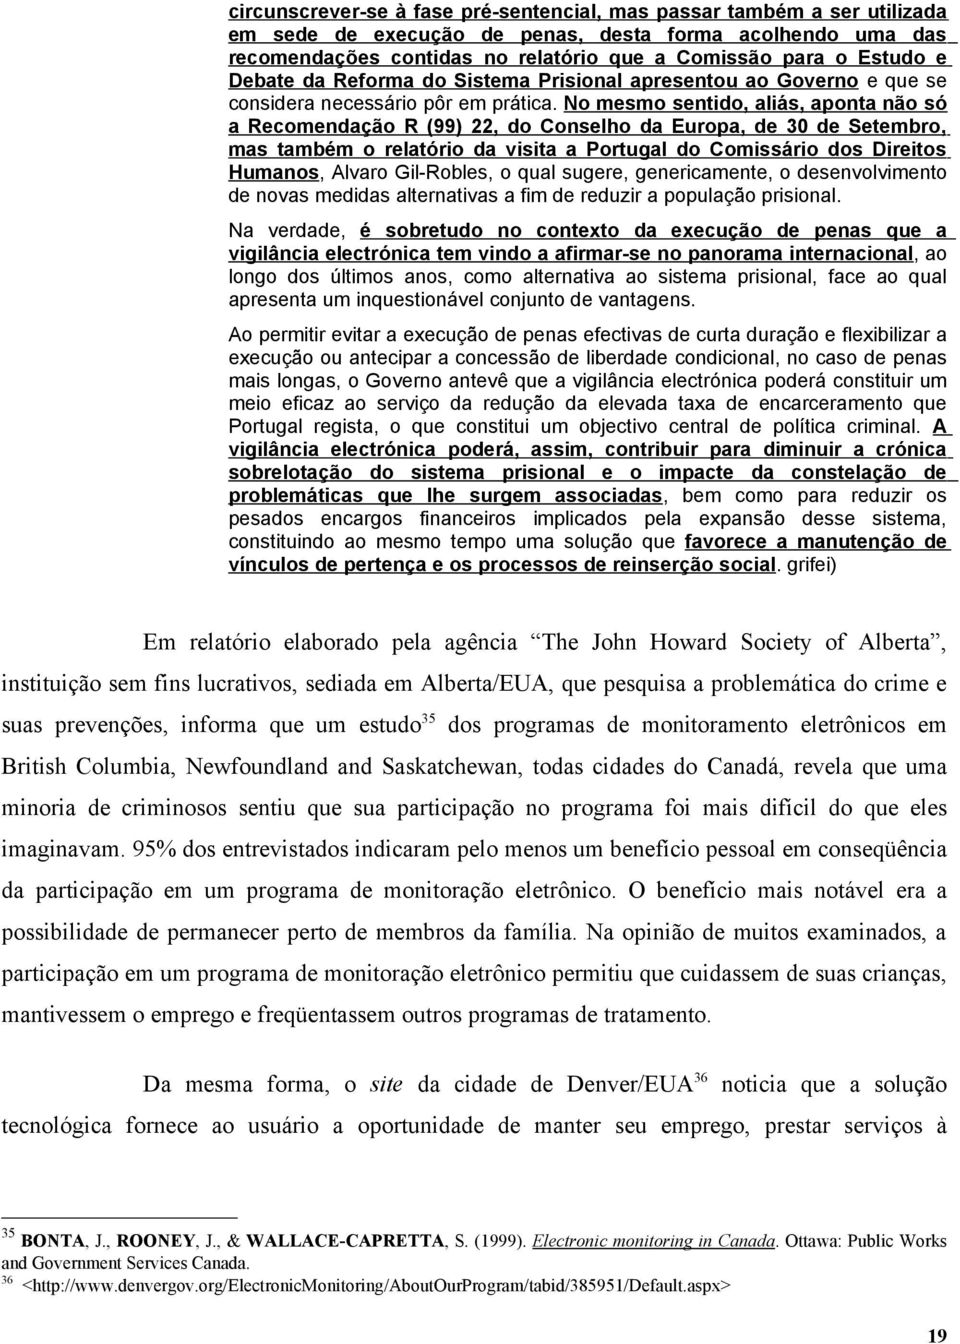 No mesmo sentido, aliás, aponta não só a Recomendação R (99) 22, do Conselho da Europa, de 30 de Setembro, mas também o relatório da visita a Portugal do Comissário dos Direitos Humanos, Alvaro